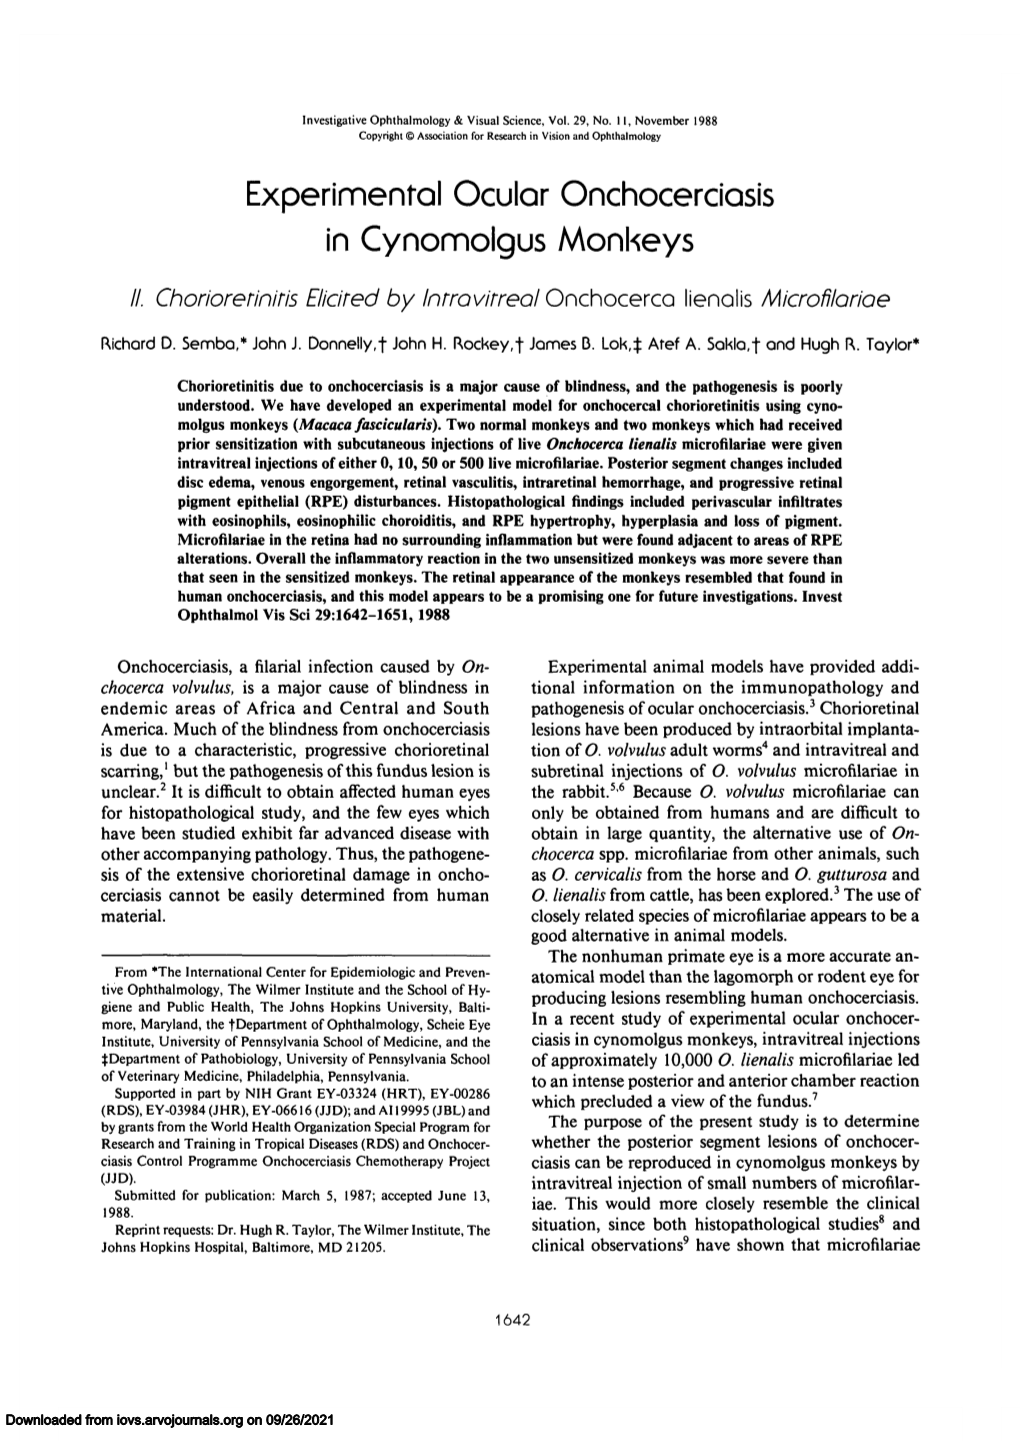 Experimental Ocular Onchocerciasis in Cynomolgus Monkeys